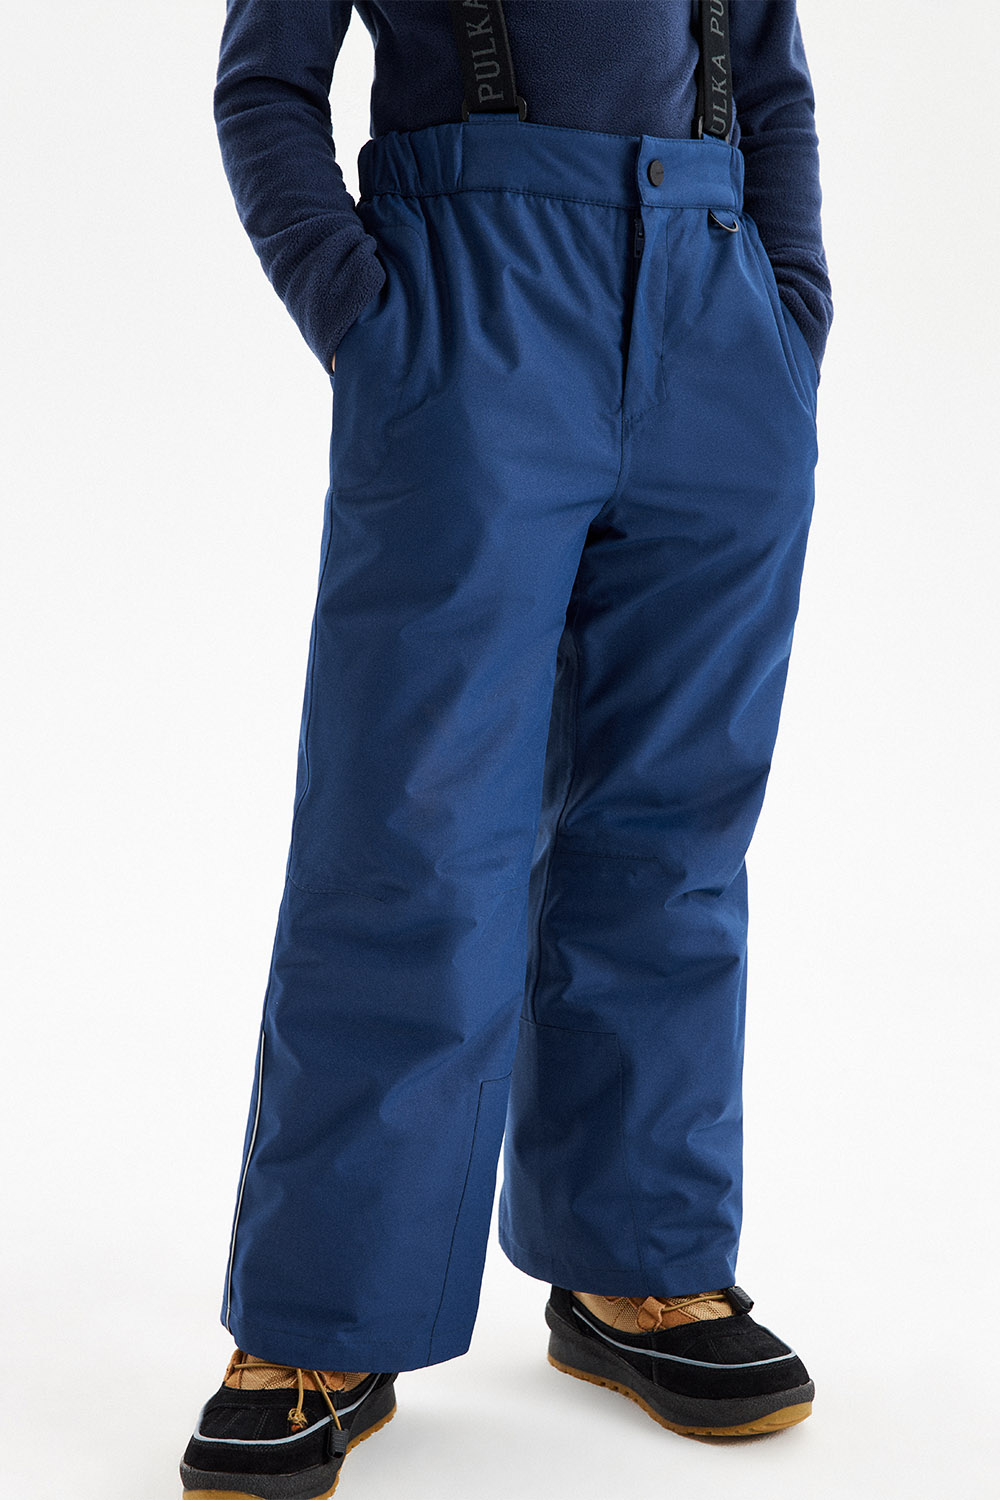 Зимние утепленные брюки унисекс из мембраны (PUAWU-316-30908-310) Silver spoon